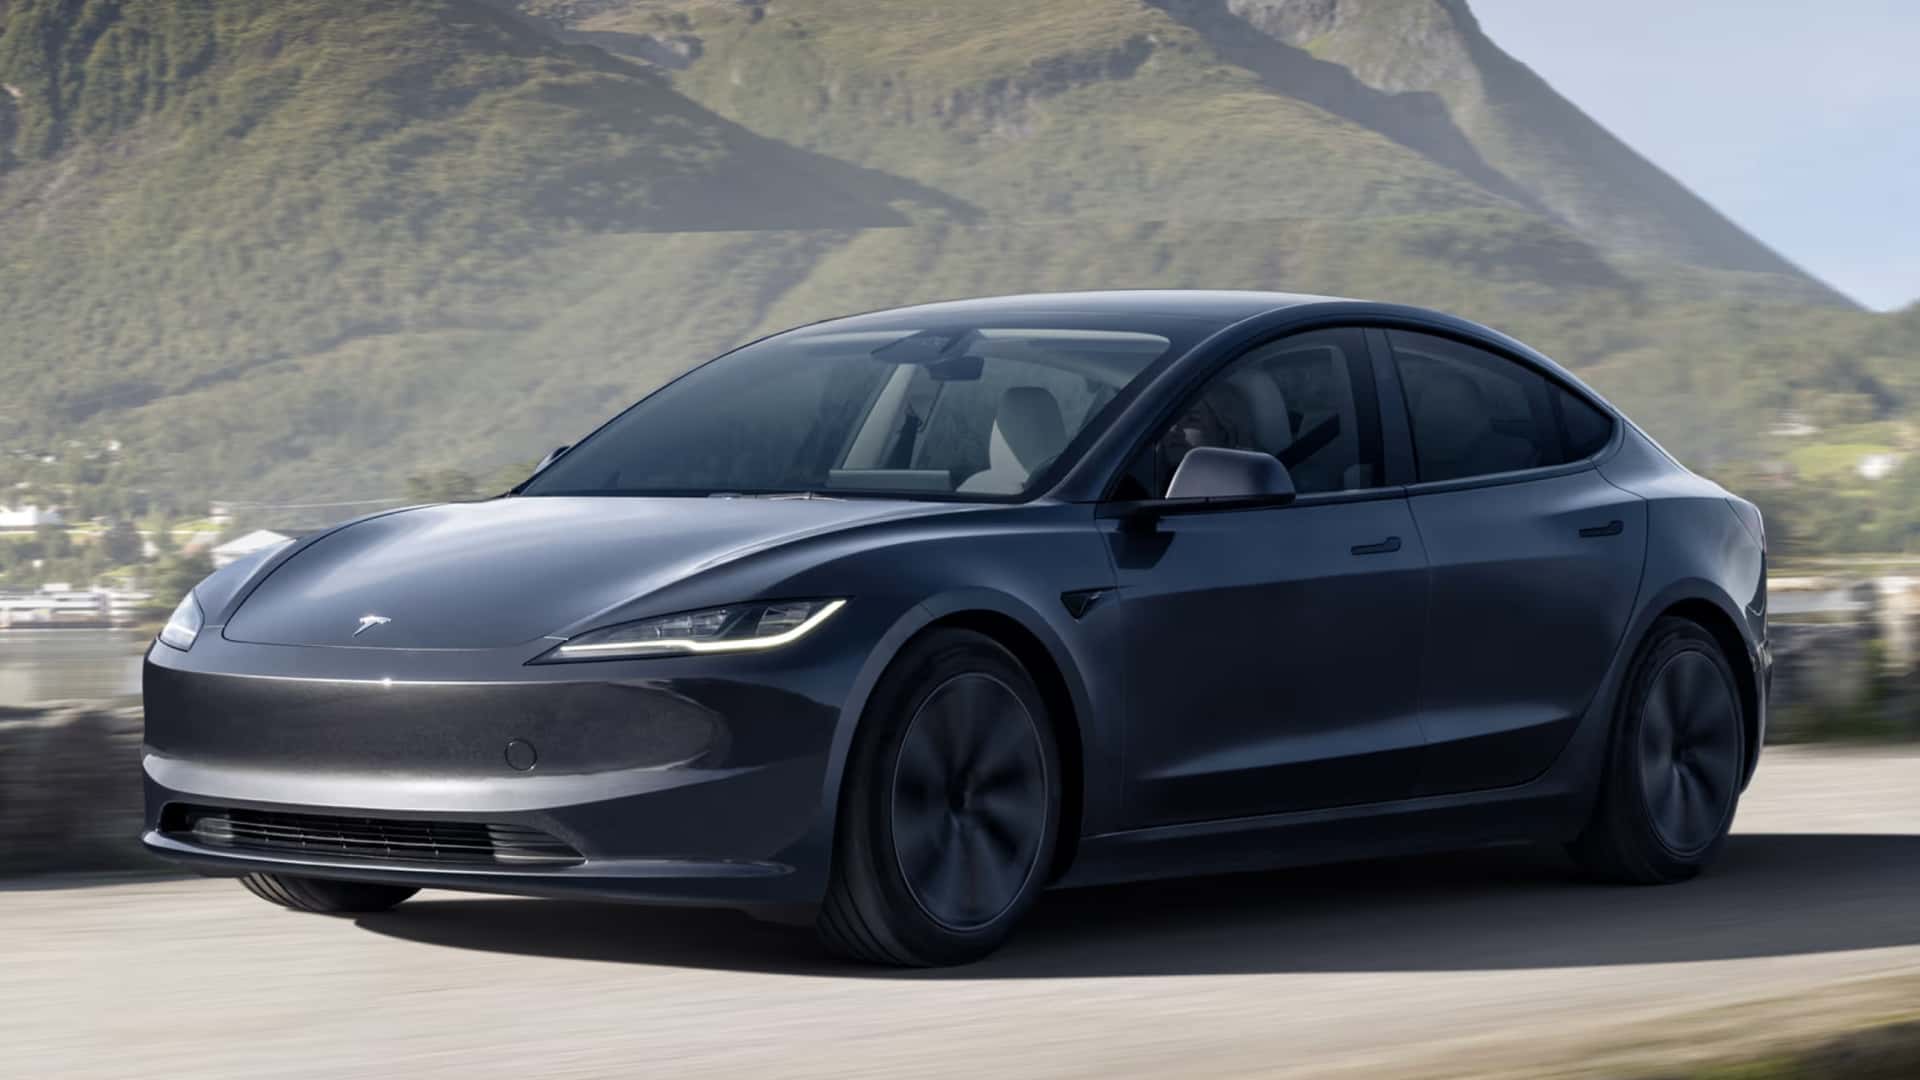 I proprietari di Tesla ottengono gratuitamente per un mese la guida autonoma completa per vedere come funziona